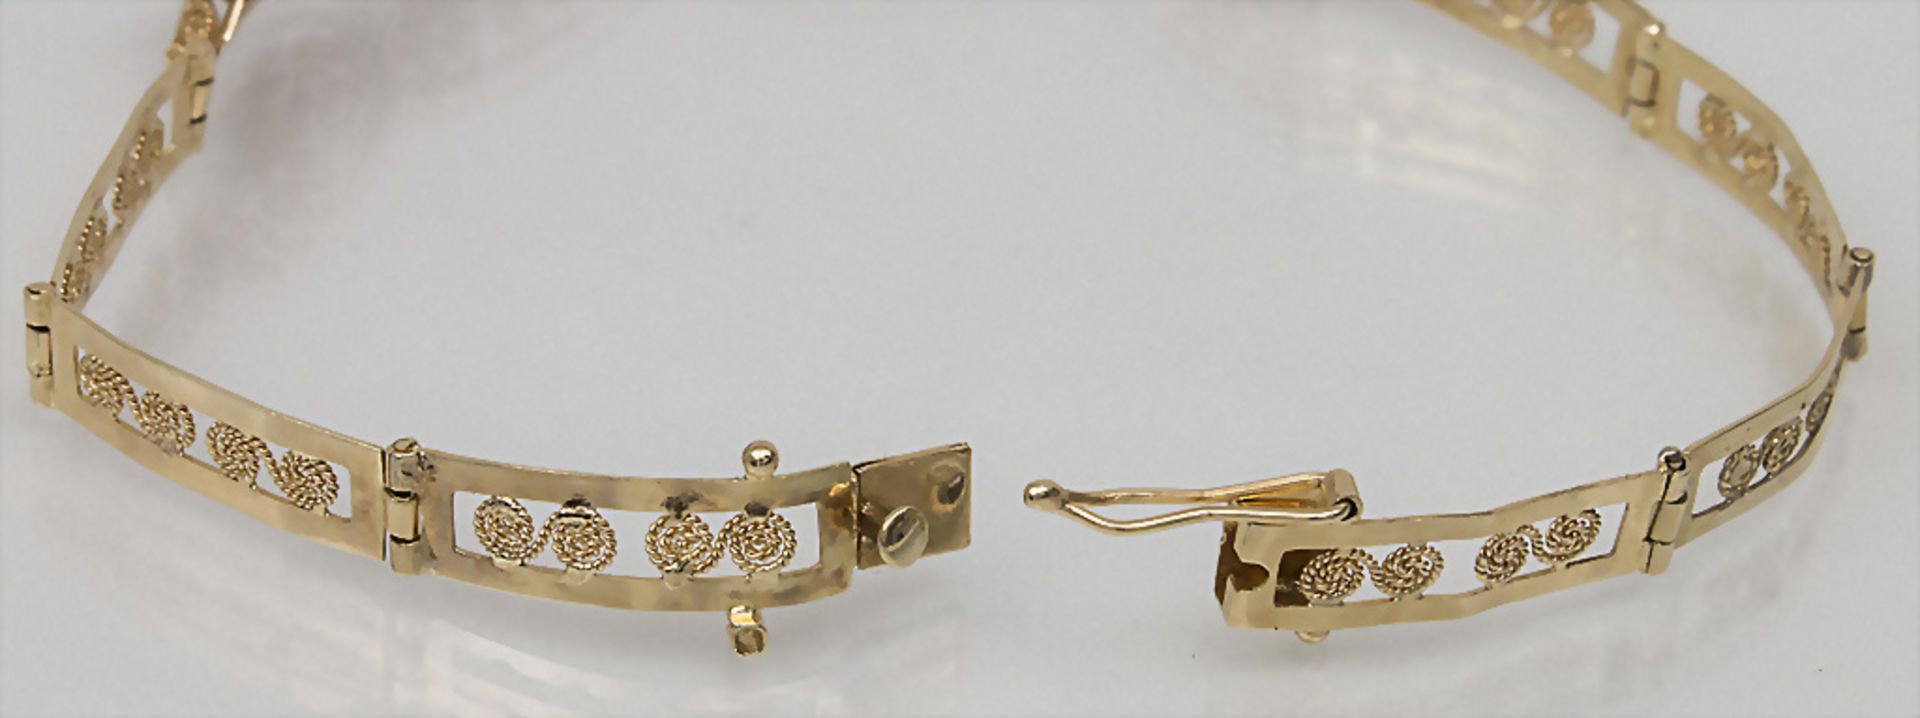 Goldarmband mit Smaragden / An 18k. gold bracelet with emaralds - Image 2 of 3